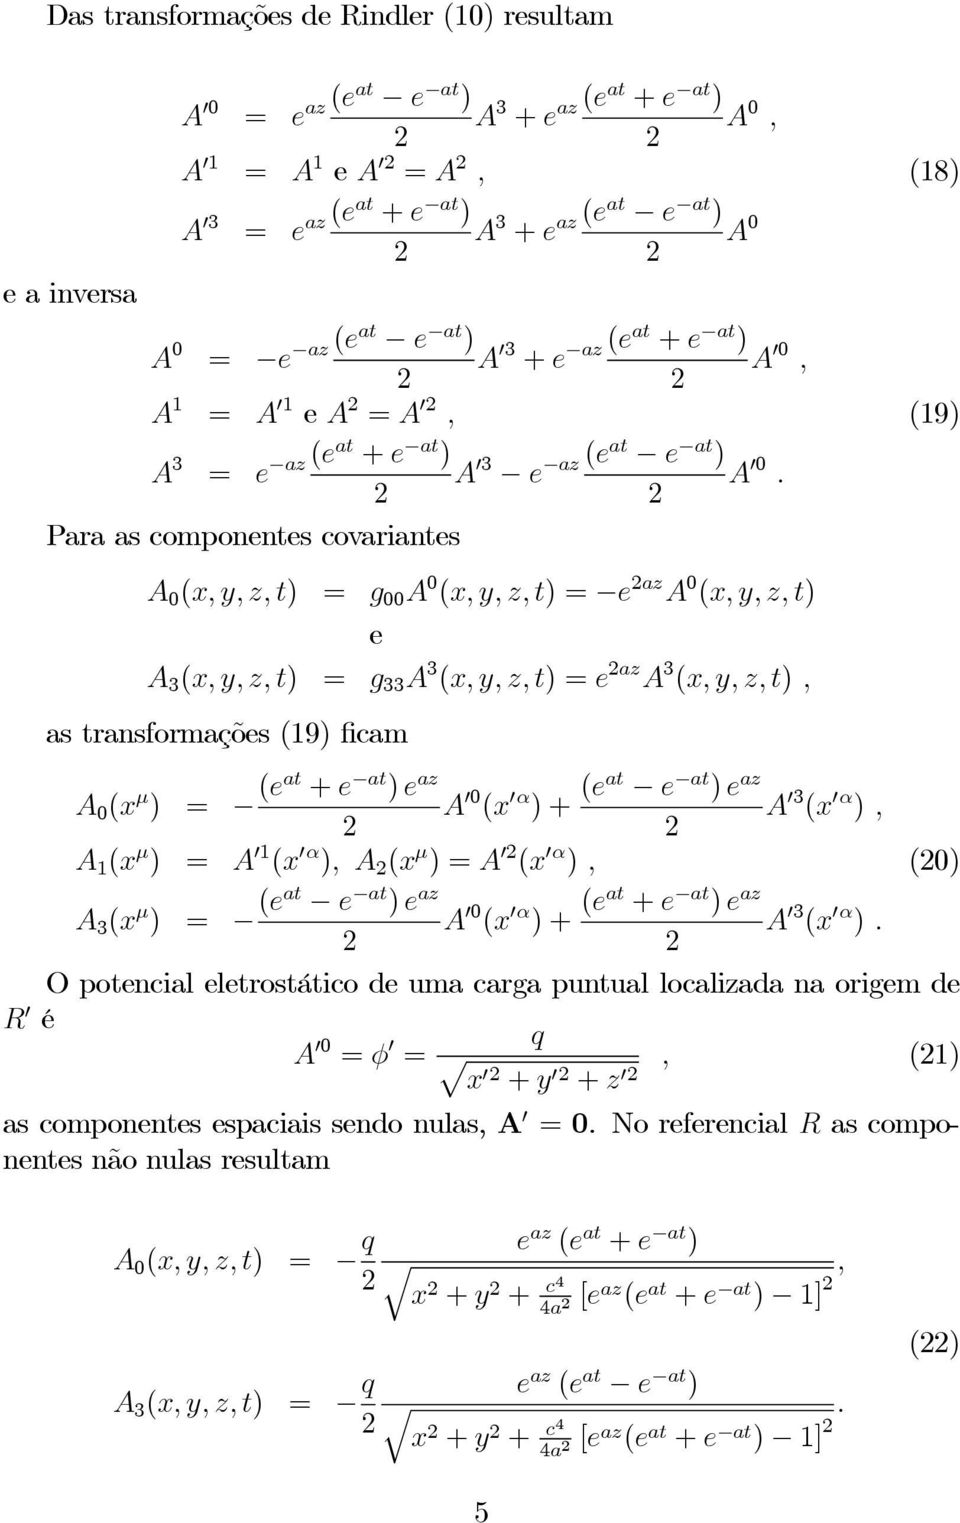 Para as componentes covariantes A 0 (x, y, z, t) = g 00 A 0 (x, y, z, t) = e az A 0 (x, y, z, t) e A 3 (x, y, z, t) = g 33 A 3 (x, y, z, t) =e az A 3 (x, y, z, t), as transformações (19) ficam A 0 (x